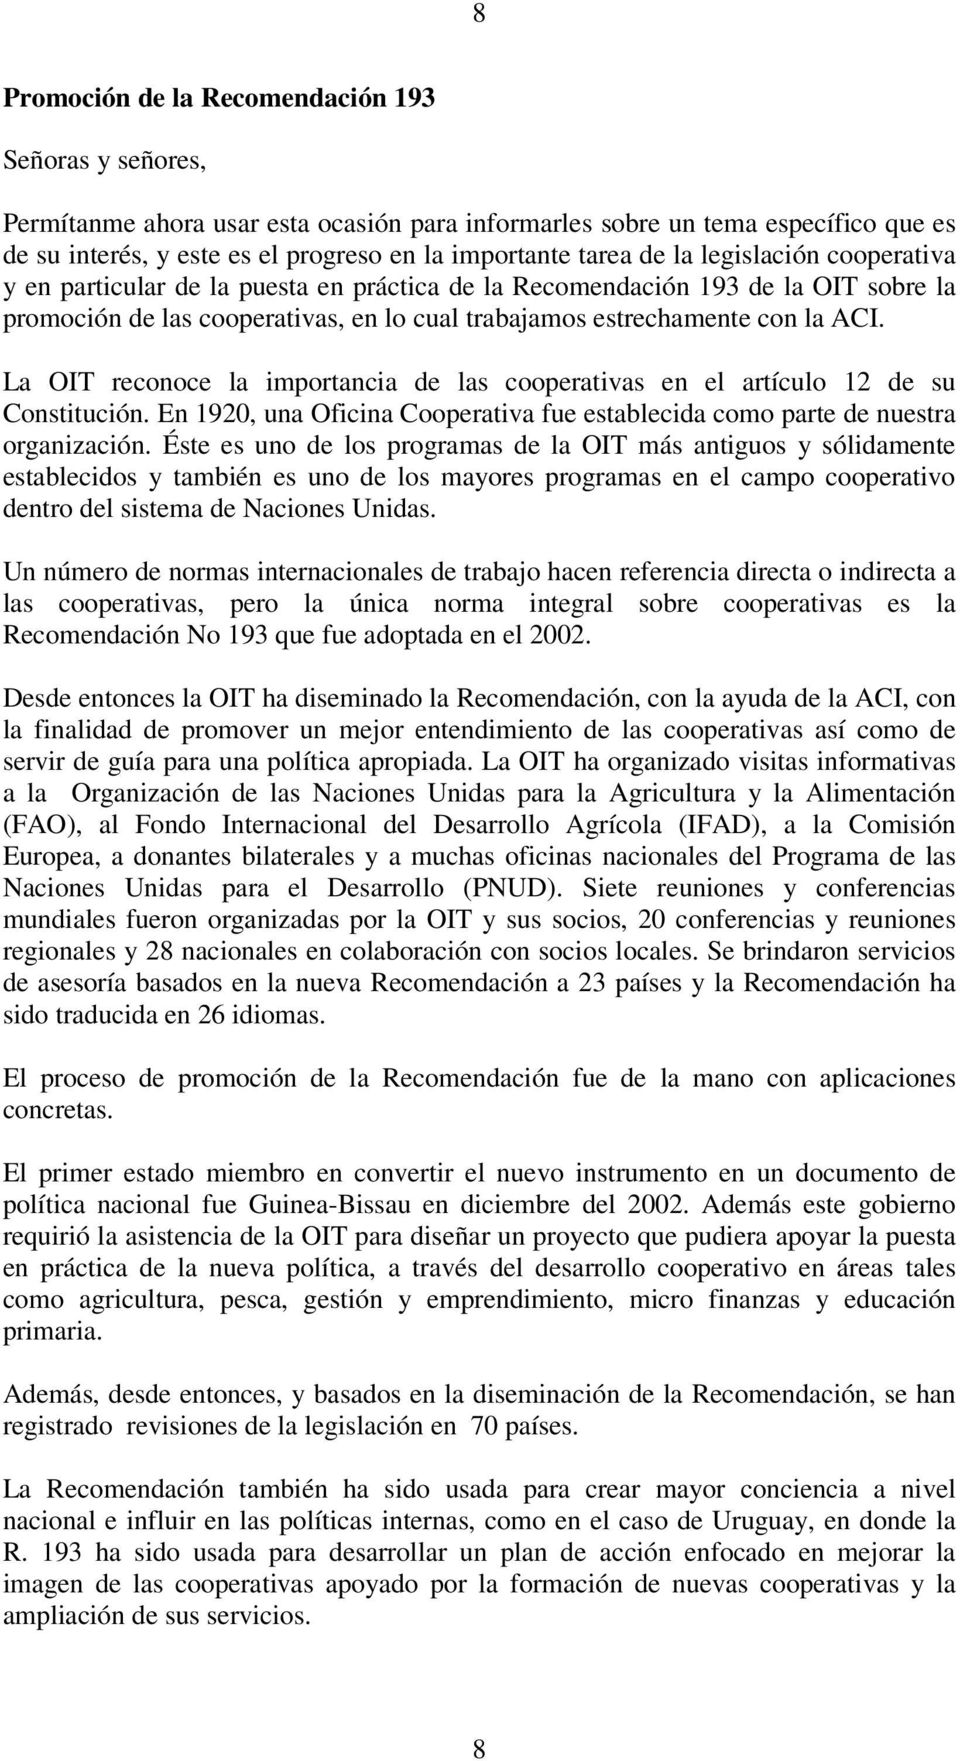 La OIT reconoce la importancia de las cooperativas en el artículo 12 de su Constitución. En 1920, una Oficina Cooperativa fue establecida como parte de nuestra organización.